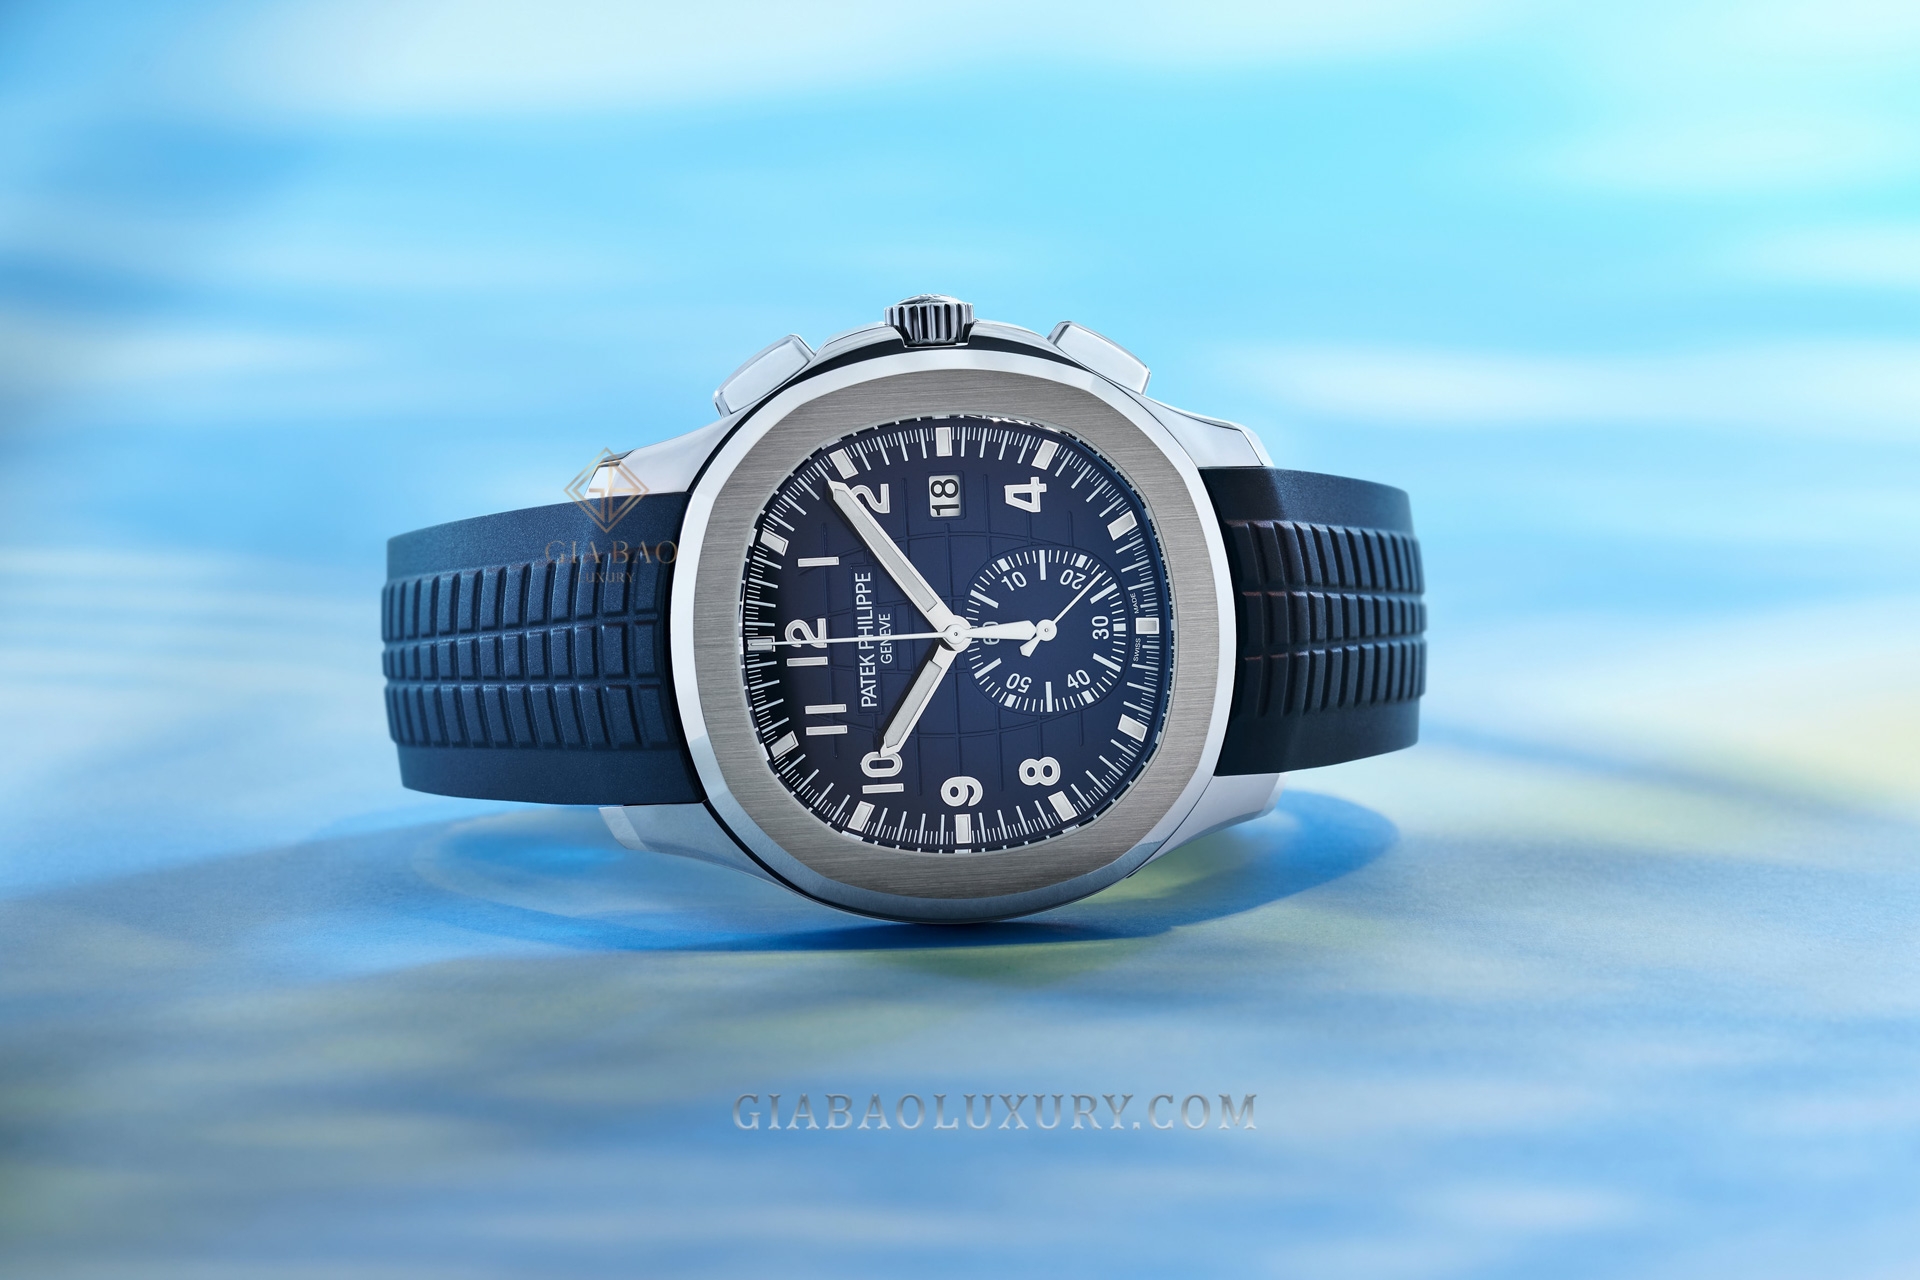 Đồng hồ Aquanaut Chronograph Ref. 5968G-001 (mặt số xanh lam), 5968G-010 (mặt số xanh kaki)